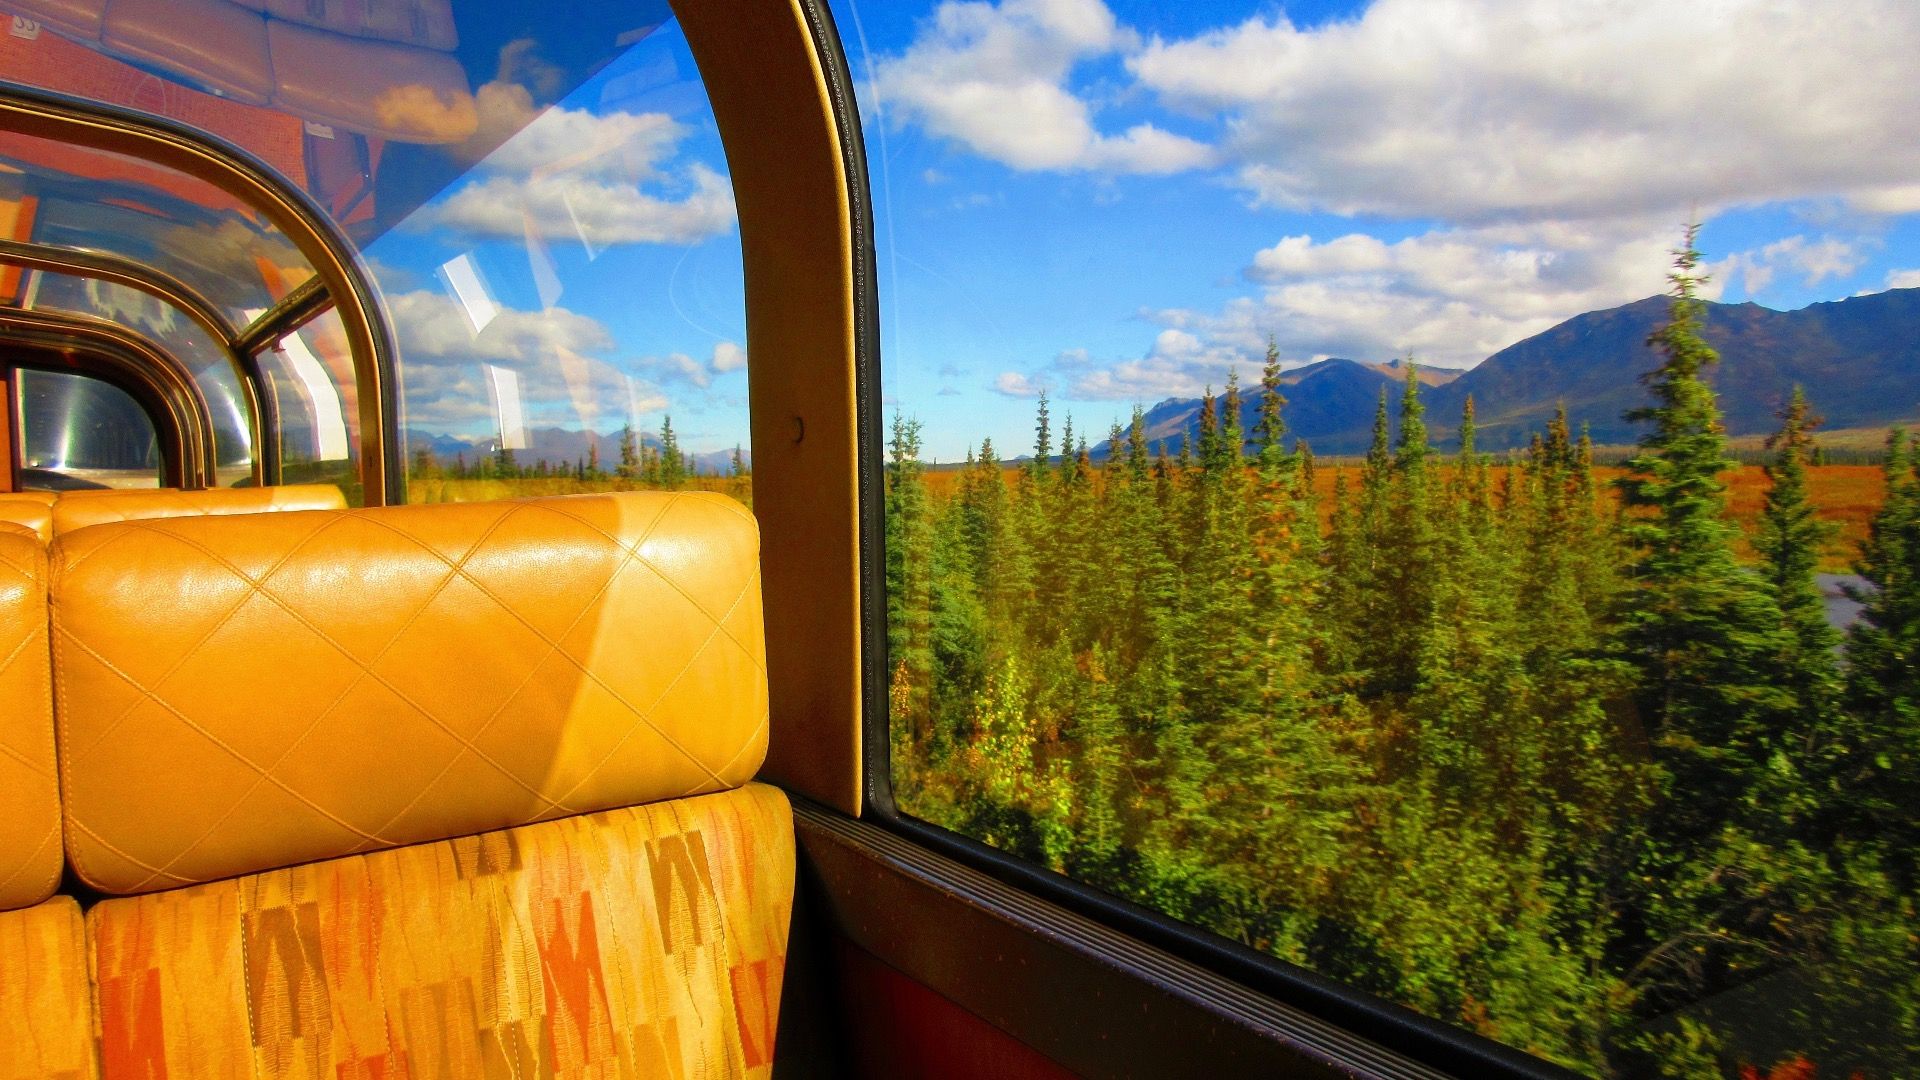 Scenic train ride in Alaska, USA